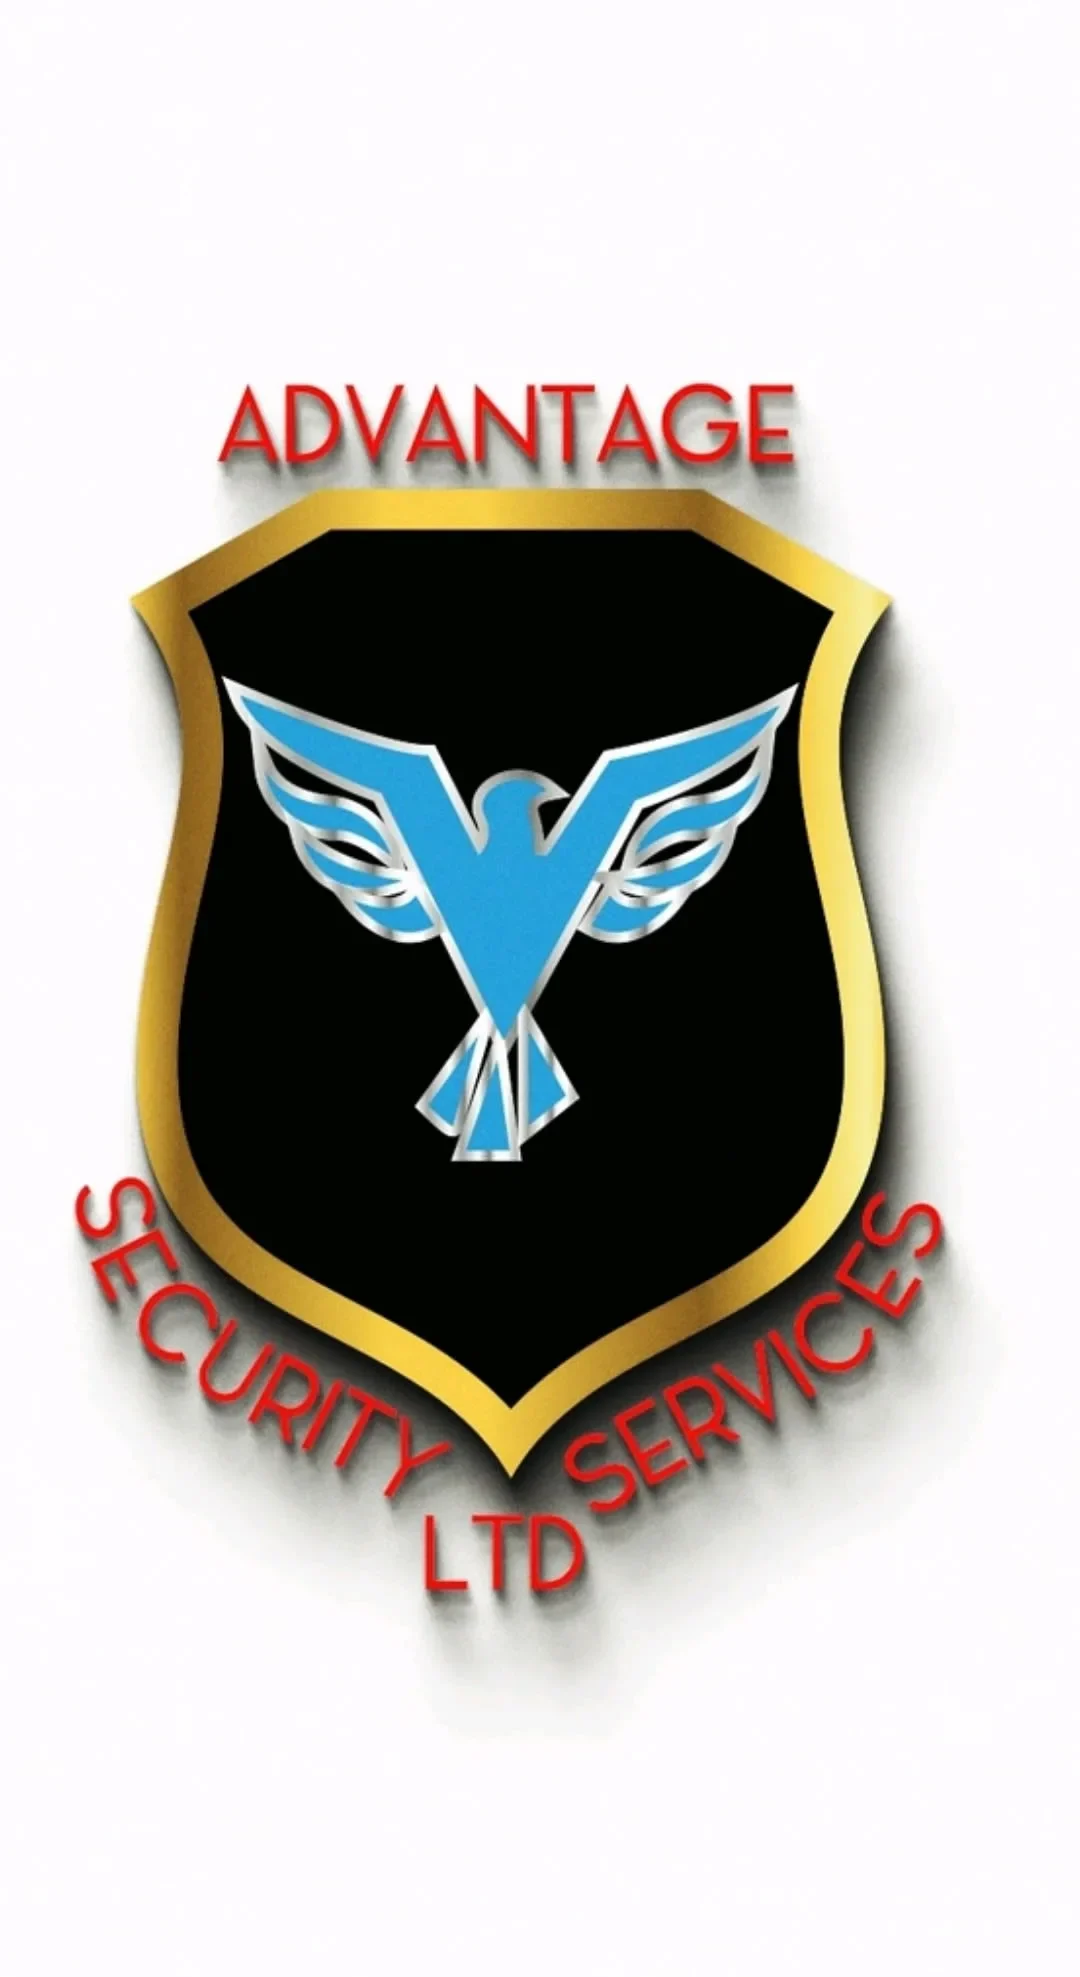 Advantage Security Services LTD